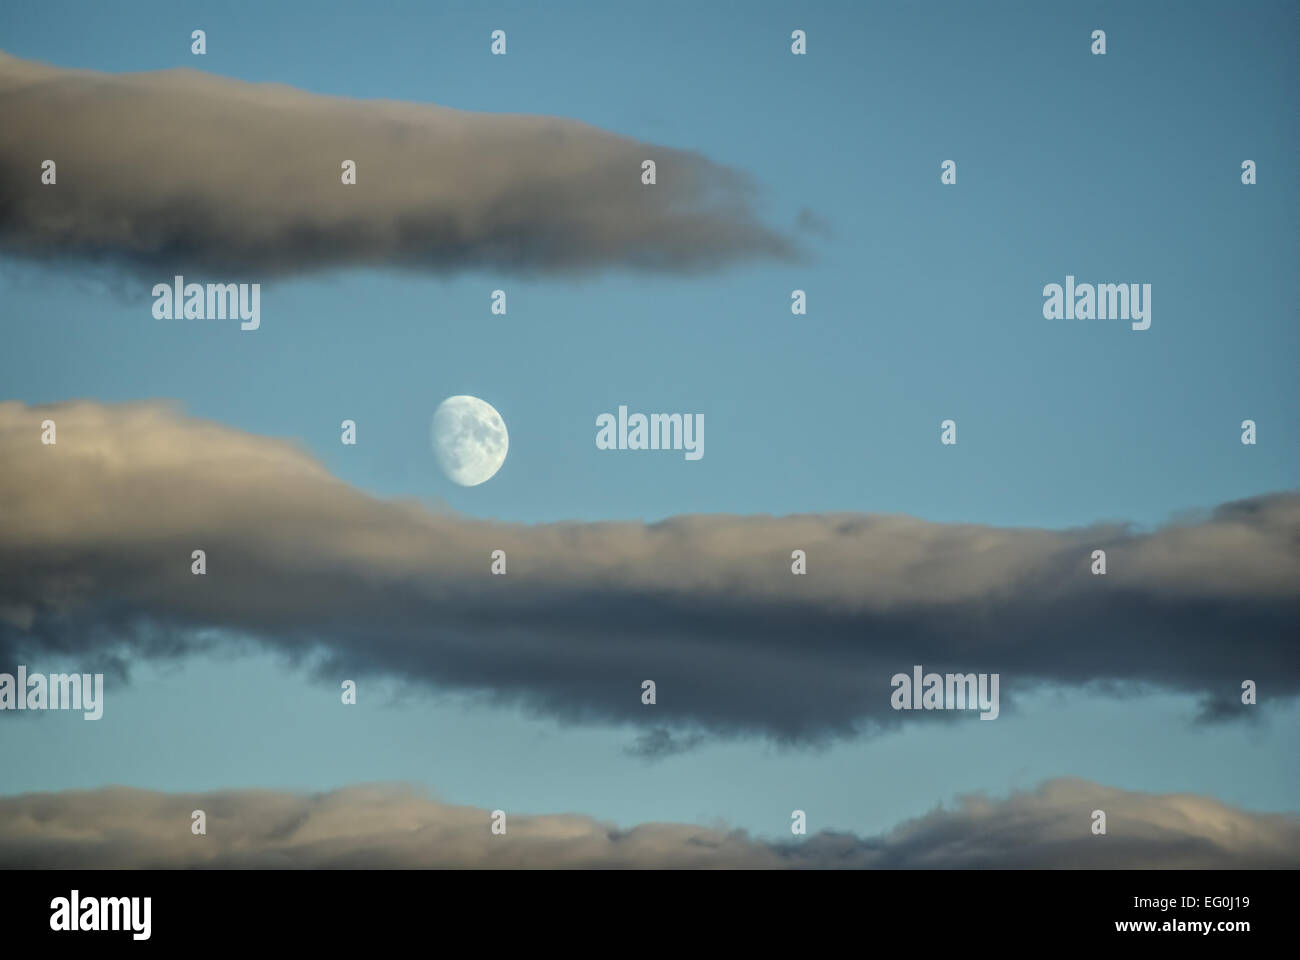 Malerische Aussicht auf einem Mond sichtbar während des Tages, umrahmt von grauen Wolken Stockfoto